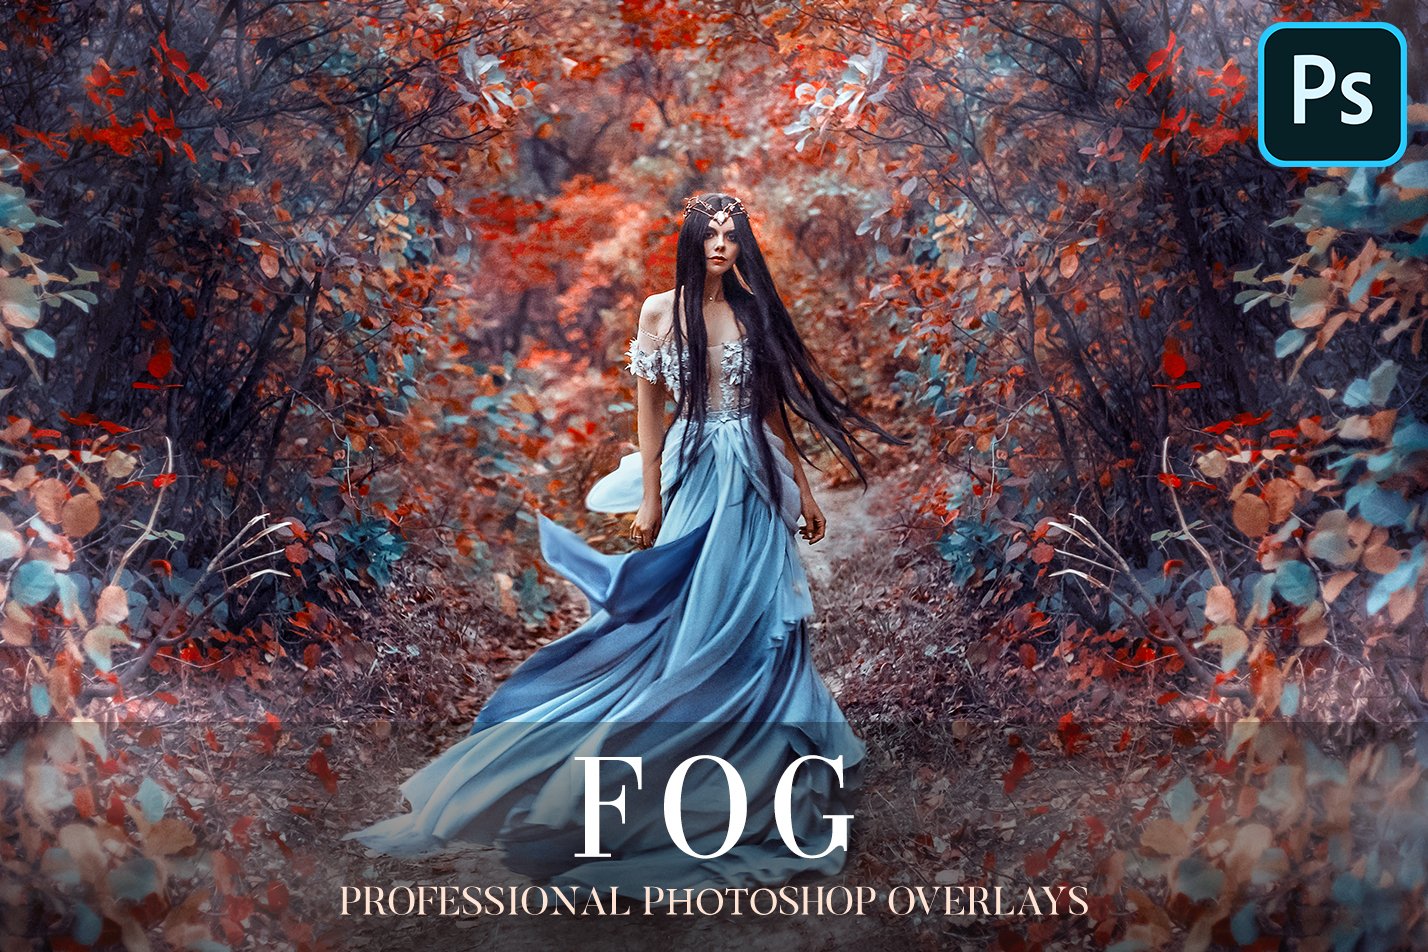 Fog Overlays Photoshopcover image.